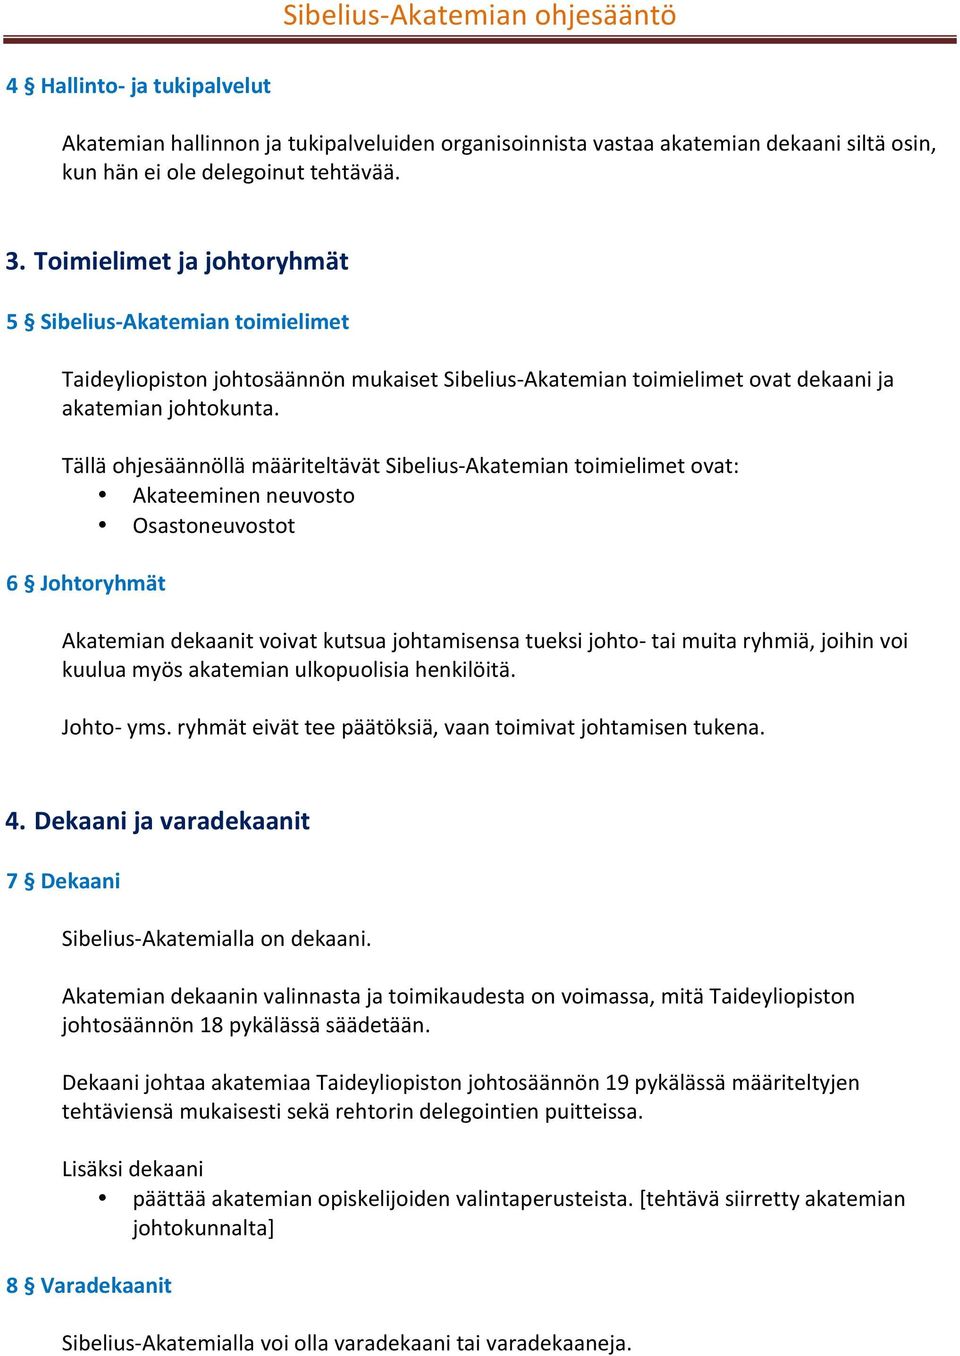 Tällä ohjesäännöllä määriteltävät Sibelius- Akatemian toimielimet ovat: Akateeminen neuvosto Osastoneuvostot 6 Johtoryhmät Akatemian dekaanit voivat kutsua johtamisensa tueksi johto- tai muita